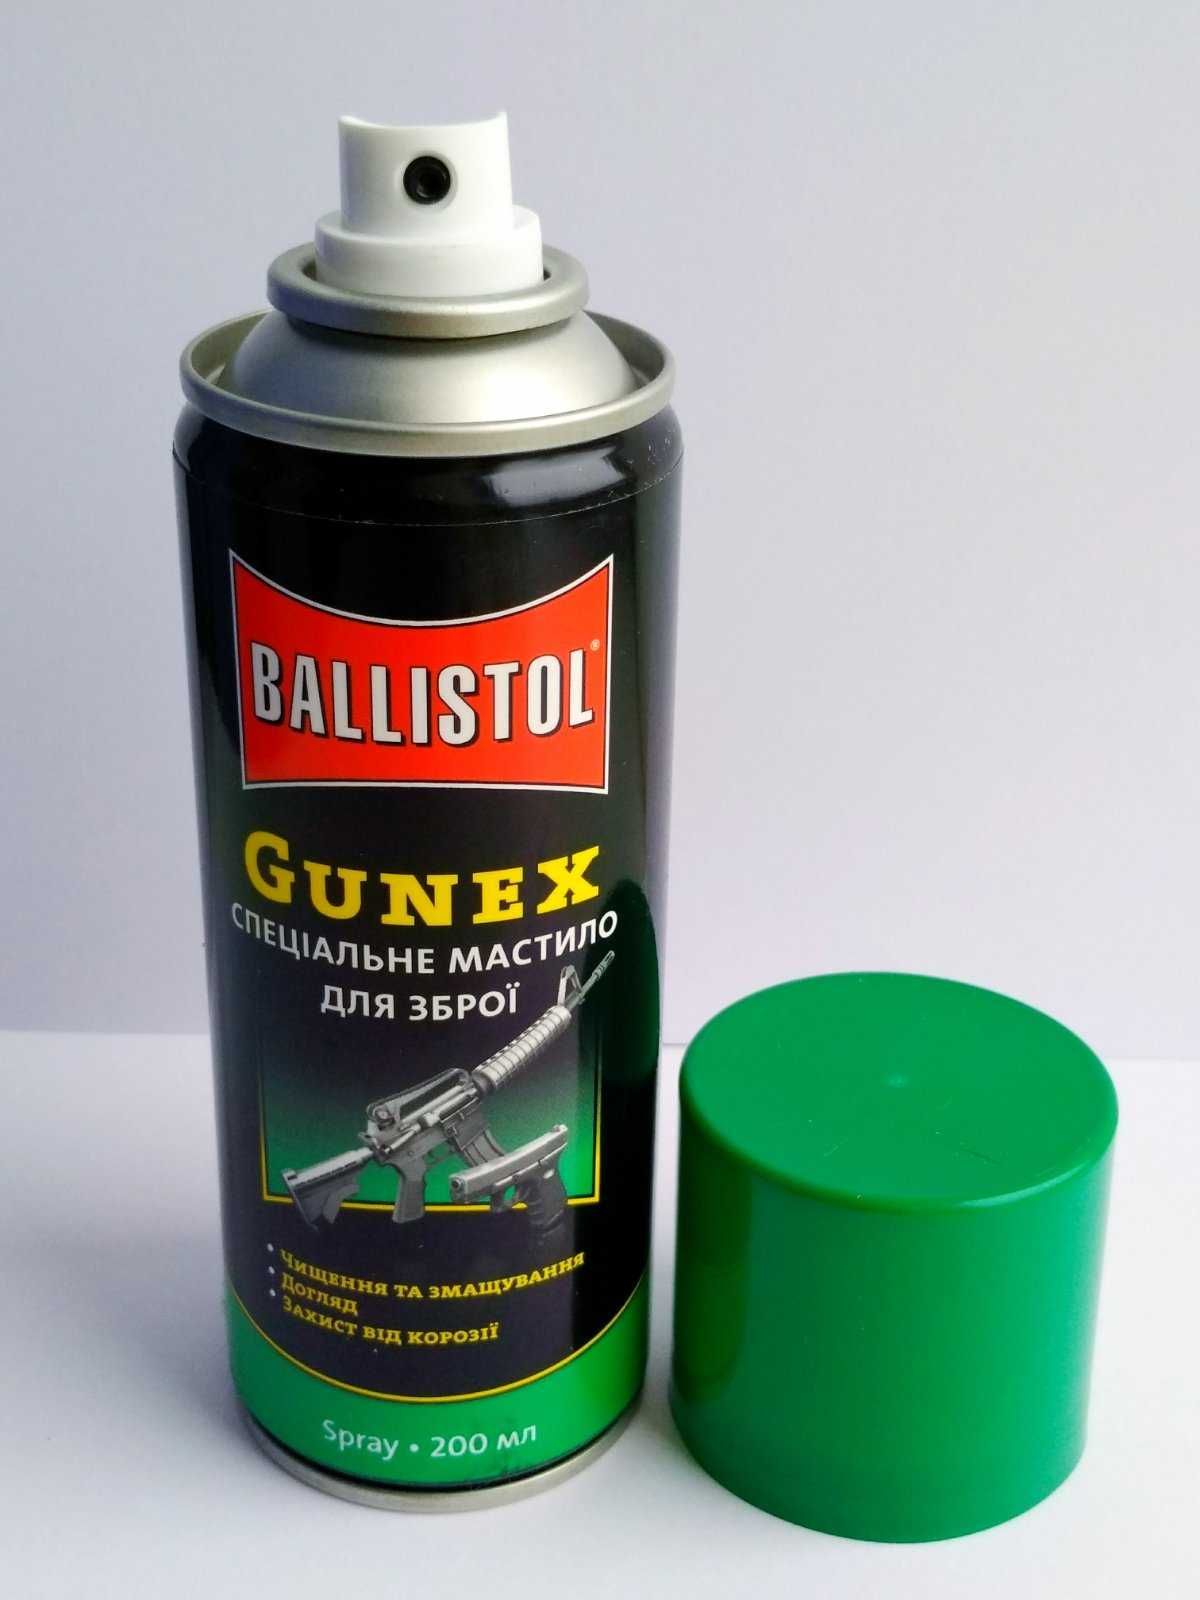 Масло збройне оружейное Ballistol Gunex 200 мл (аерозоль). Балистол